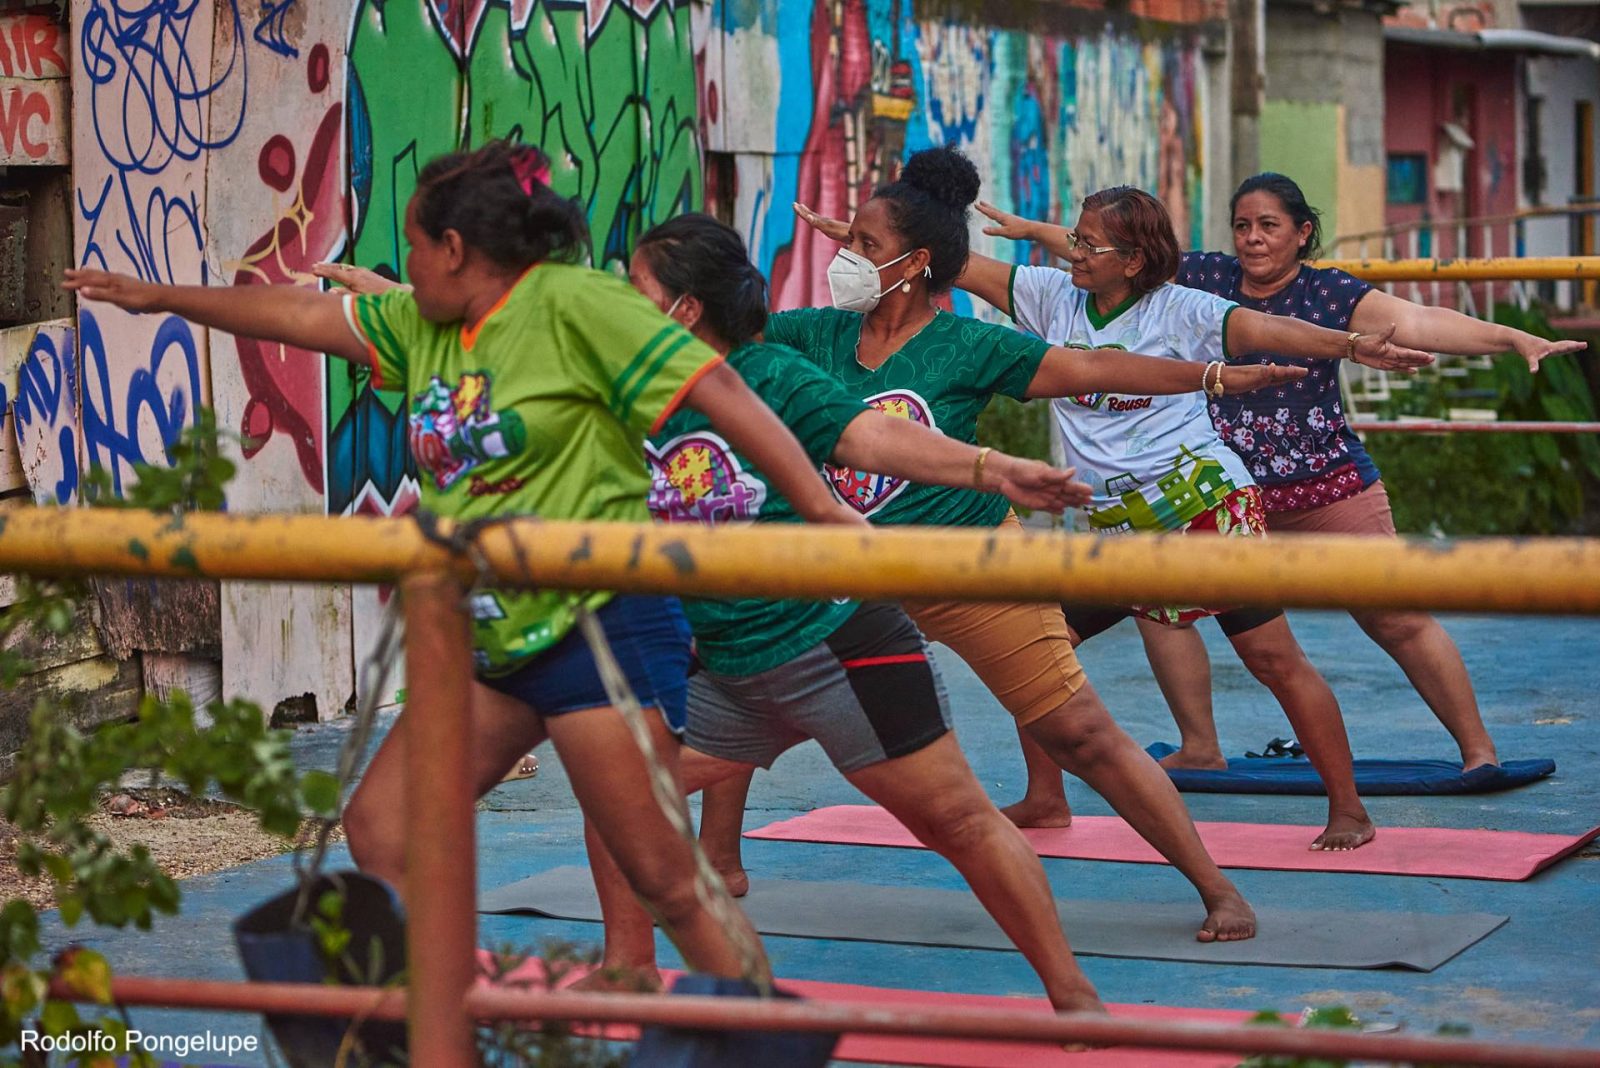 Grupo de pessoas fazendo ioga durante programação da Virada Sustentável Manaus, promovida pela Fundação Amazônia Sustentável (FAS).